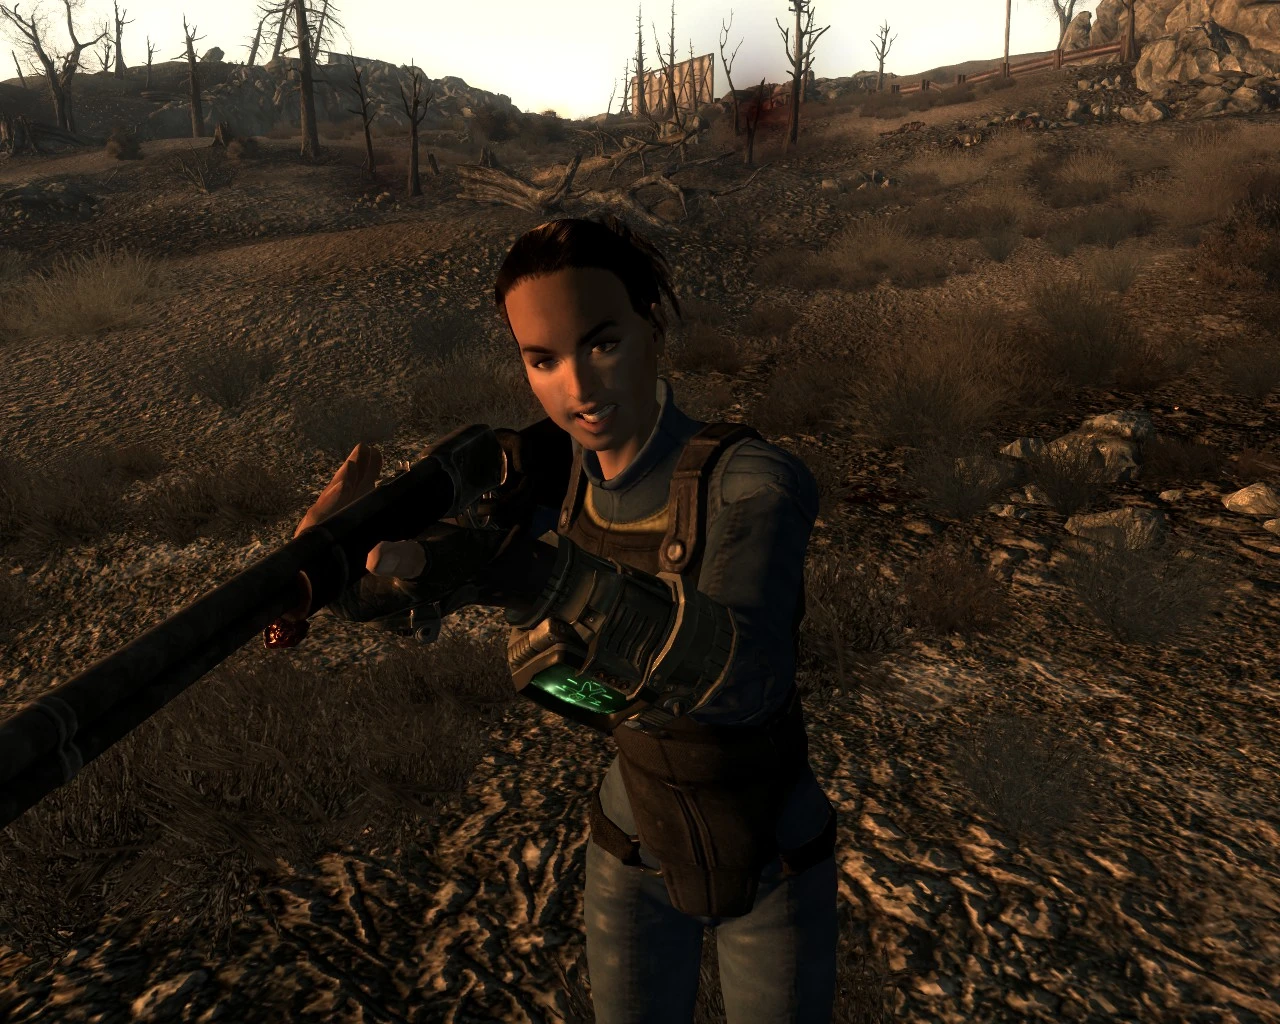 Follower Amata At Fallout 3 Nexus Mods And Community